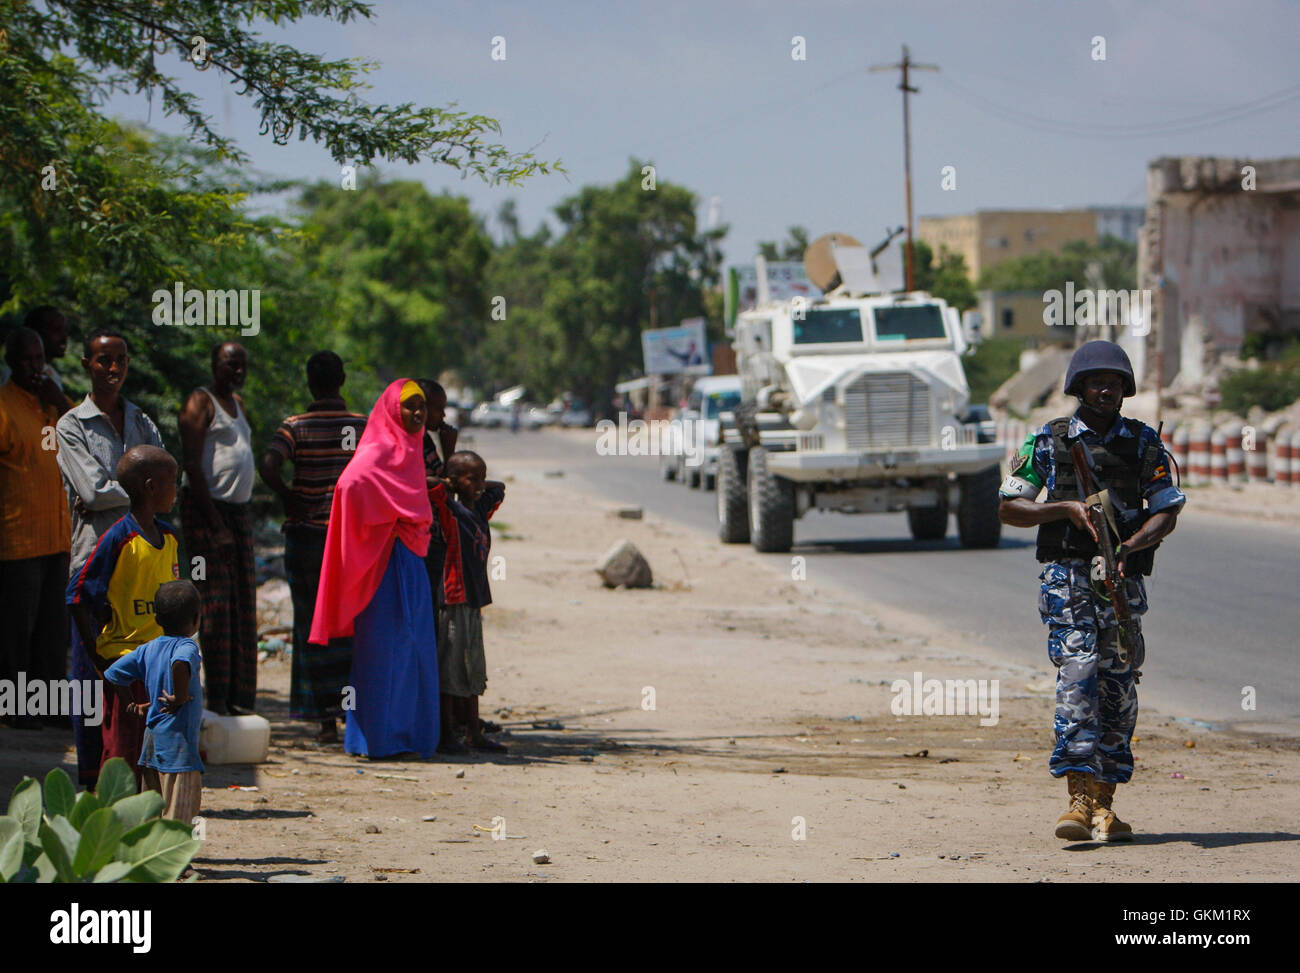 La Somalie, Mogadiscio : Dans un document de cours photos prises et publiées par l'Union africaine et l'équipe de support d'information des Nations Unies 09 novembre, les civils somaliens regarder sur comme un agent de police ougandaise agissant comme partie d'une unité de police constituée (FPU) avec la Mission de l'Union de l'Union africaine en Somalie (AMISOM) marche dernières pendant une patrouille à pied dans le district de Kaa'ran dans la capitale Mogadishu. L'AMISOM FPUs travaillent avec leurs homologues de la Force de police somalienne (SPF) en contribuant à assurer la sécurité à Mogadiscio, en plus d'une formation et d'encadrement du SPF sur le maintien de l'ordre techniques et pratiques. PH IST UA-ONU Banque D'Images